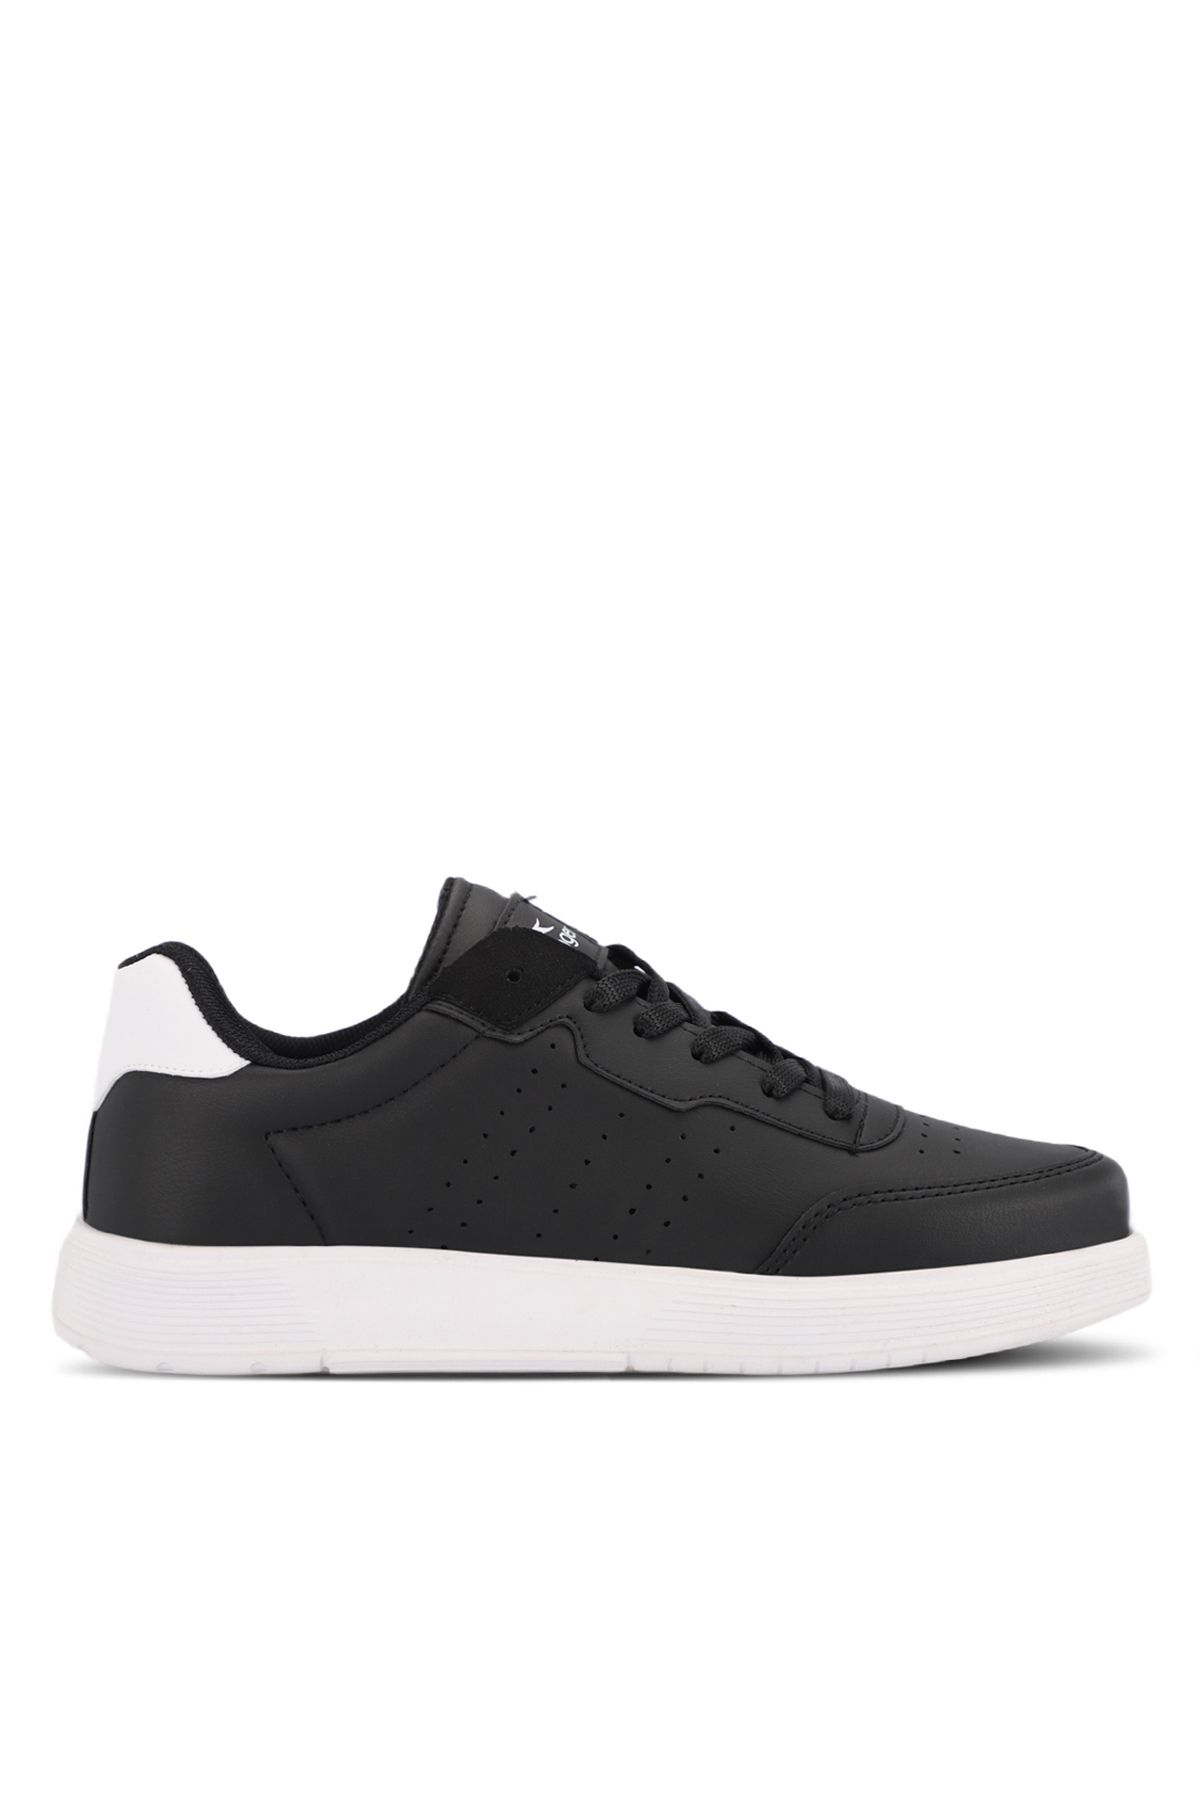 Slazenger ZEKKO Erkek Sneaker Ayakkabı Siyah / Beyaz